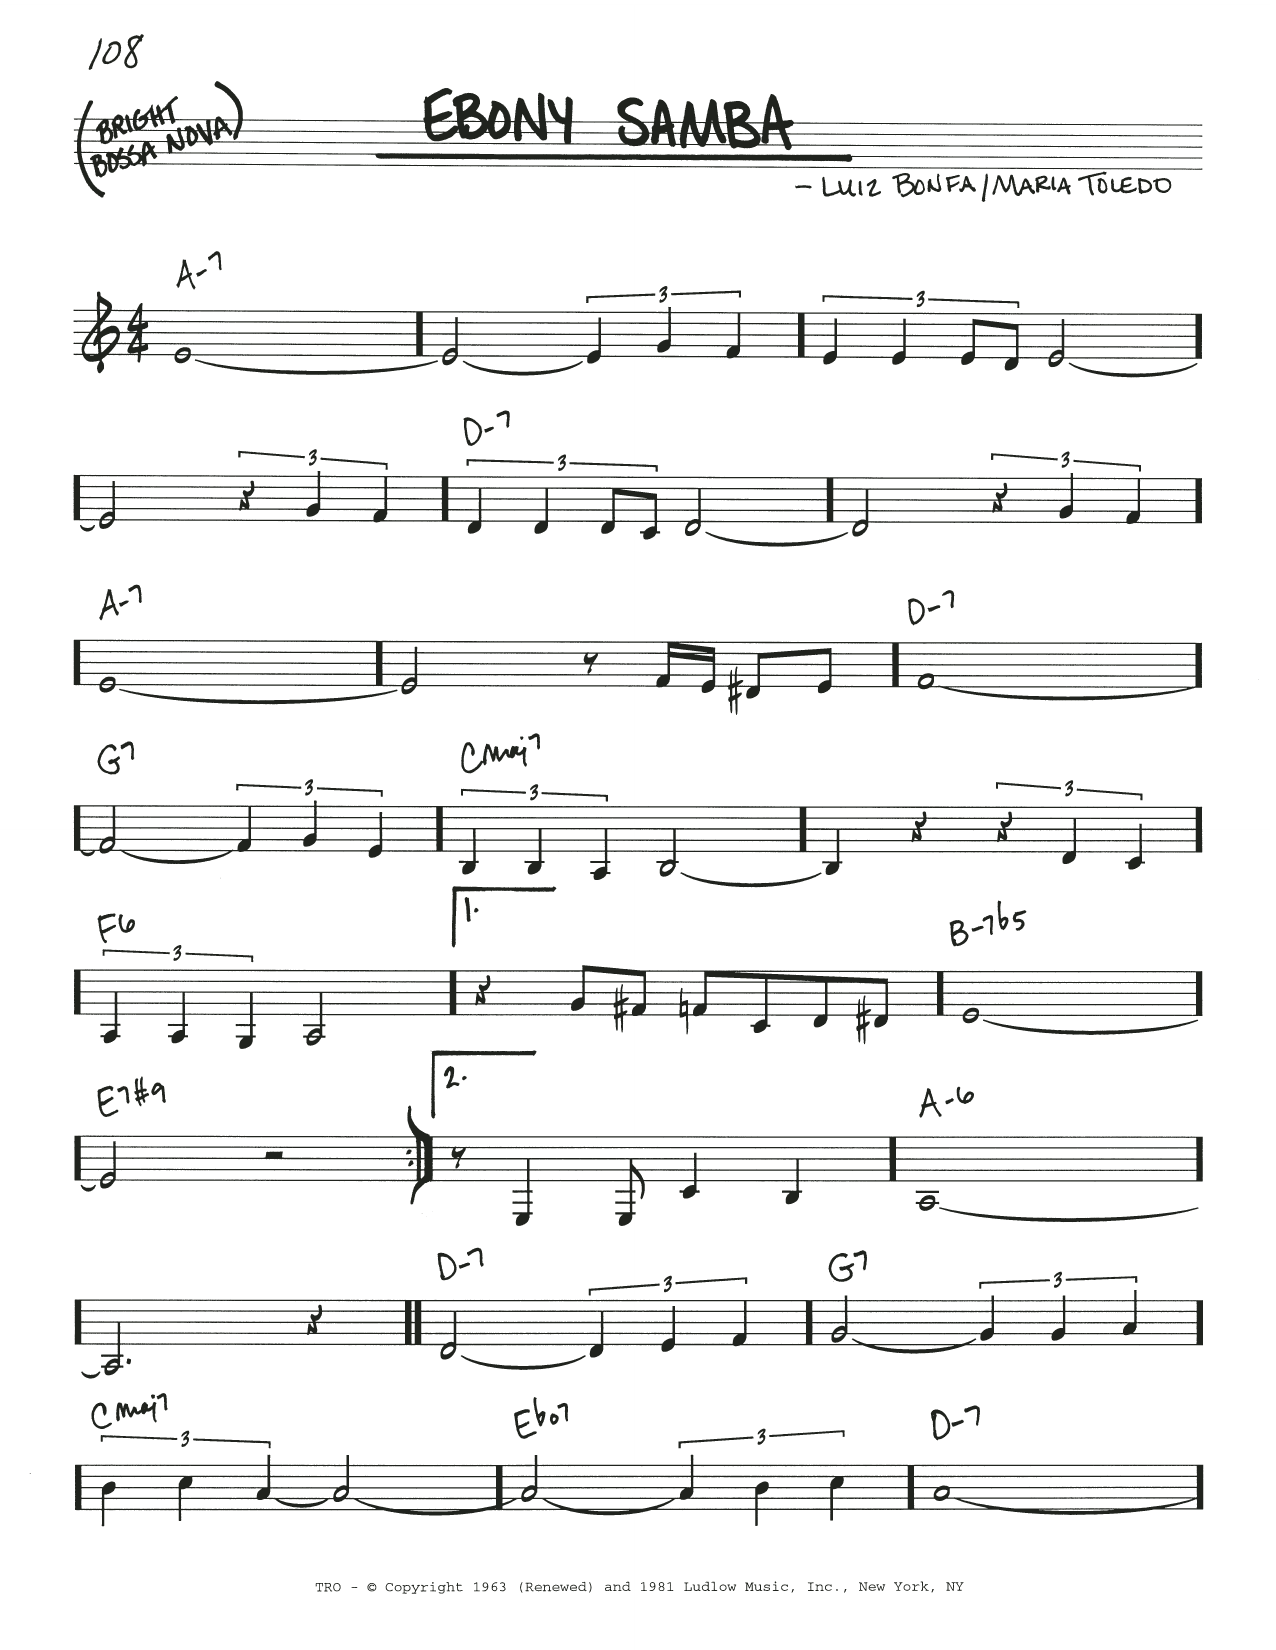 Stan Getz Ebony Samba (Sambanegro) Sheet Music Notes & Chords for Real Book – Melody & Chords - Download or Print PDF